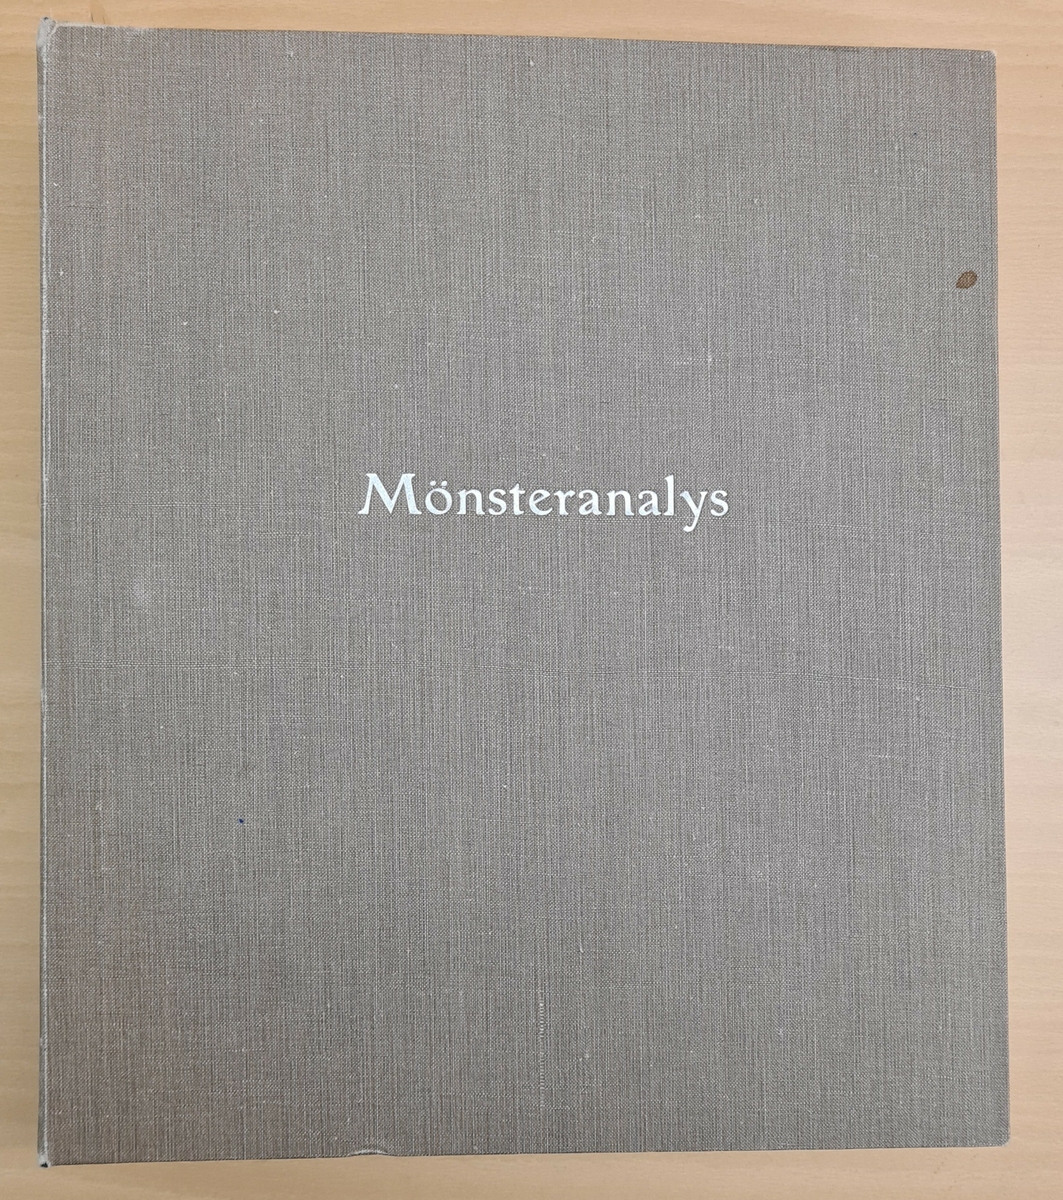 Mönsterblad i pärm, tyg och papper. Bindningslära med tygprover.
Pärmen märkt: Mönsteranalys. På ryggen: 1931-32.